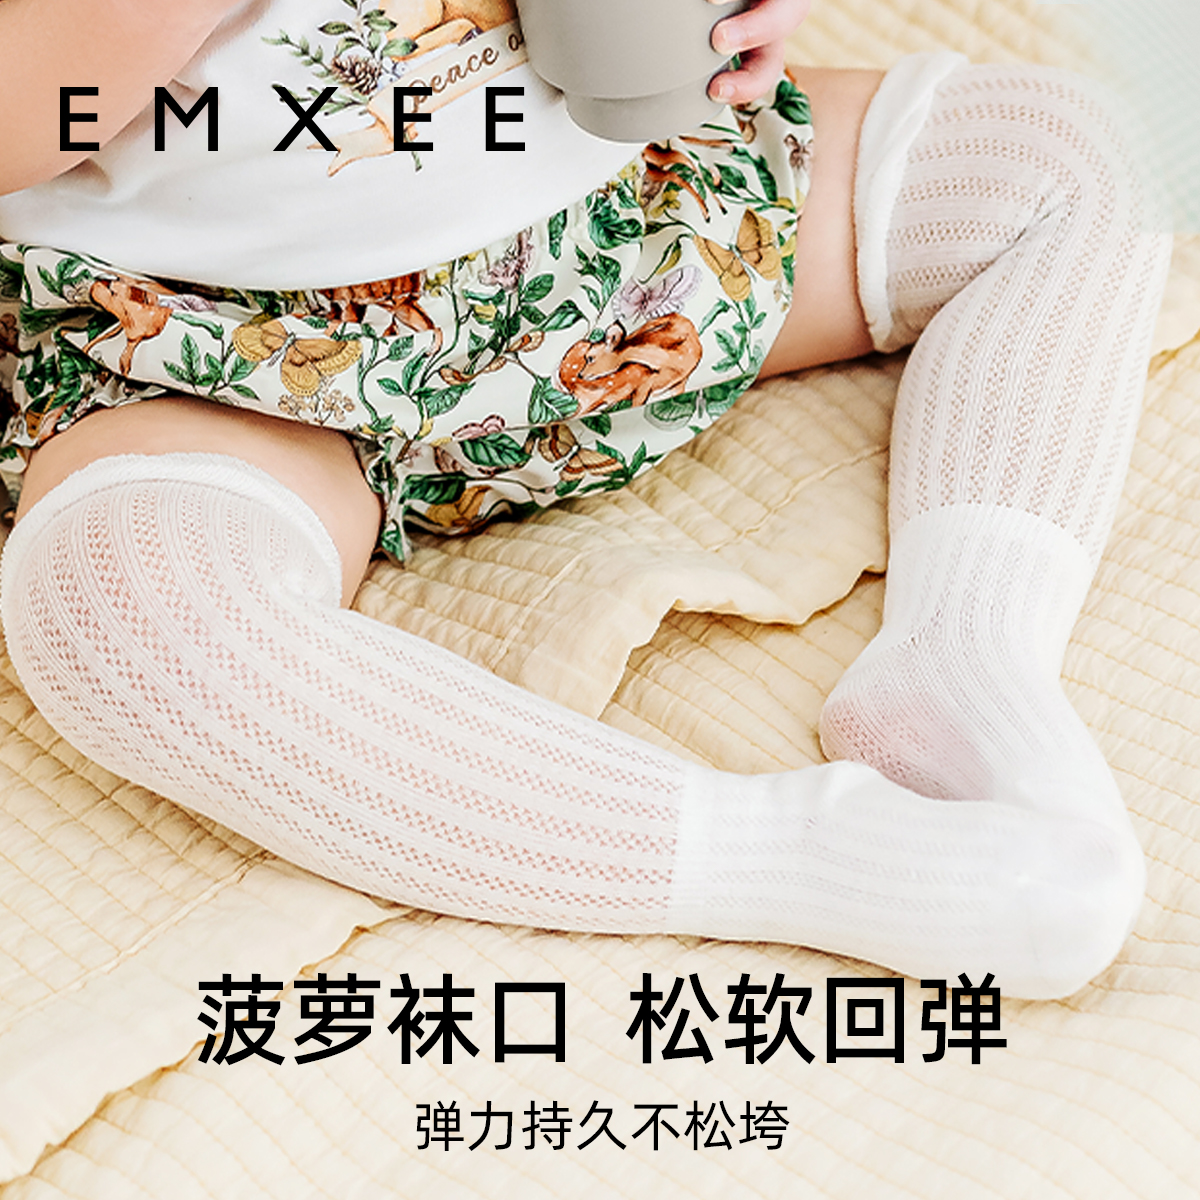 【新品】嫚熙婴儿袜子防蚊袜新生儿宝宝长筒袜夏季薄款凉感透气